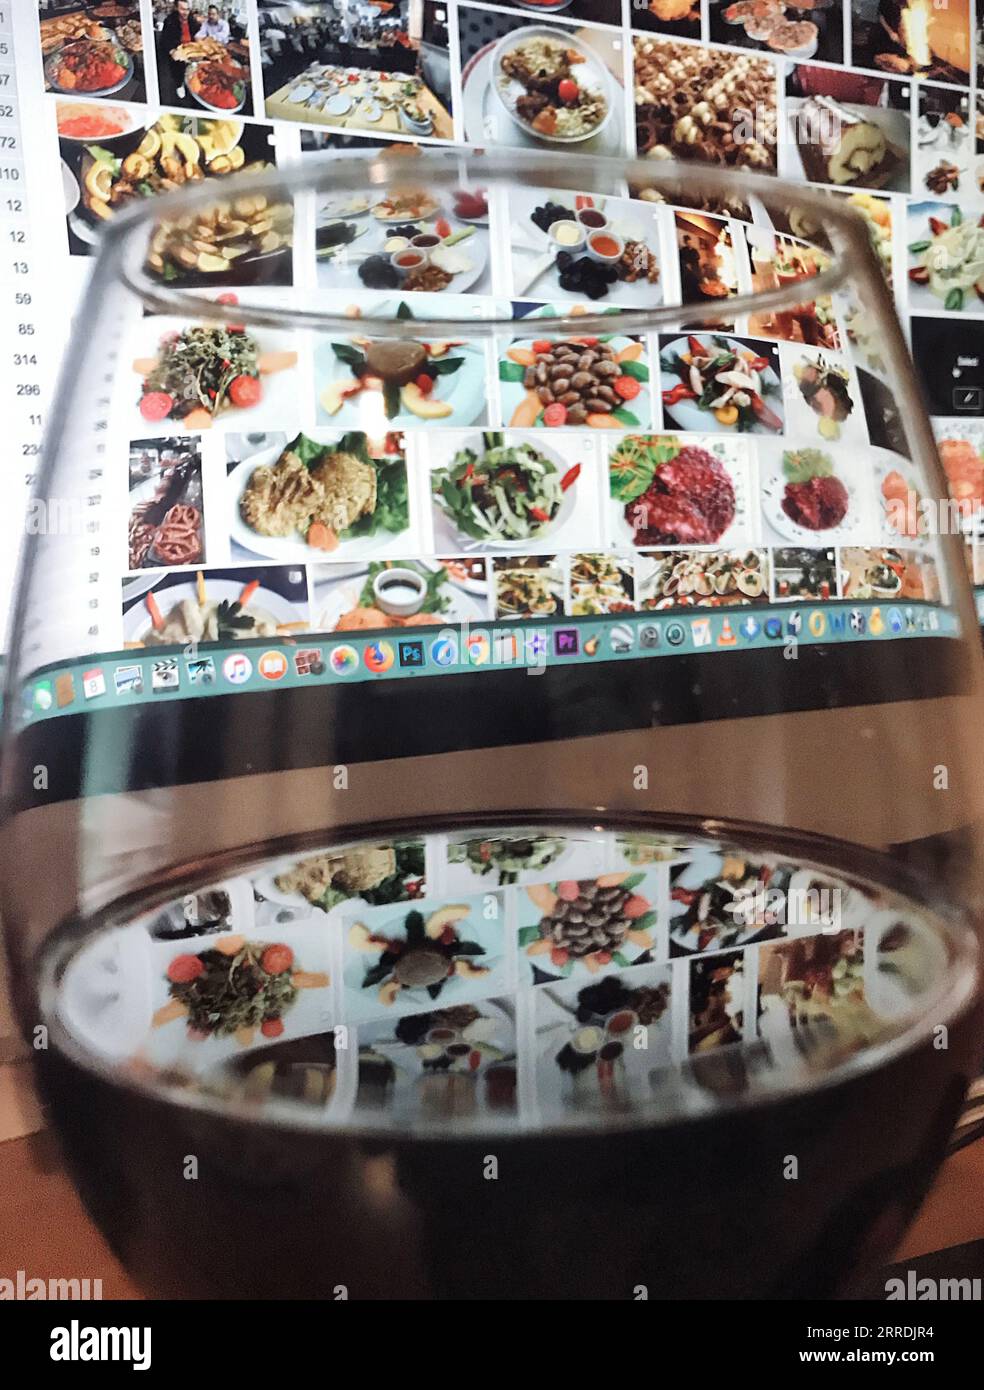 Rotweinglas hinter dem Essen Fotos auf dem Bildschirm. Stockfoto